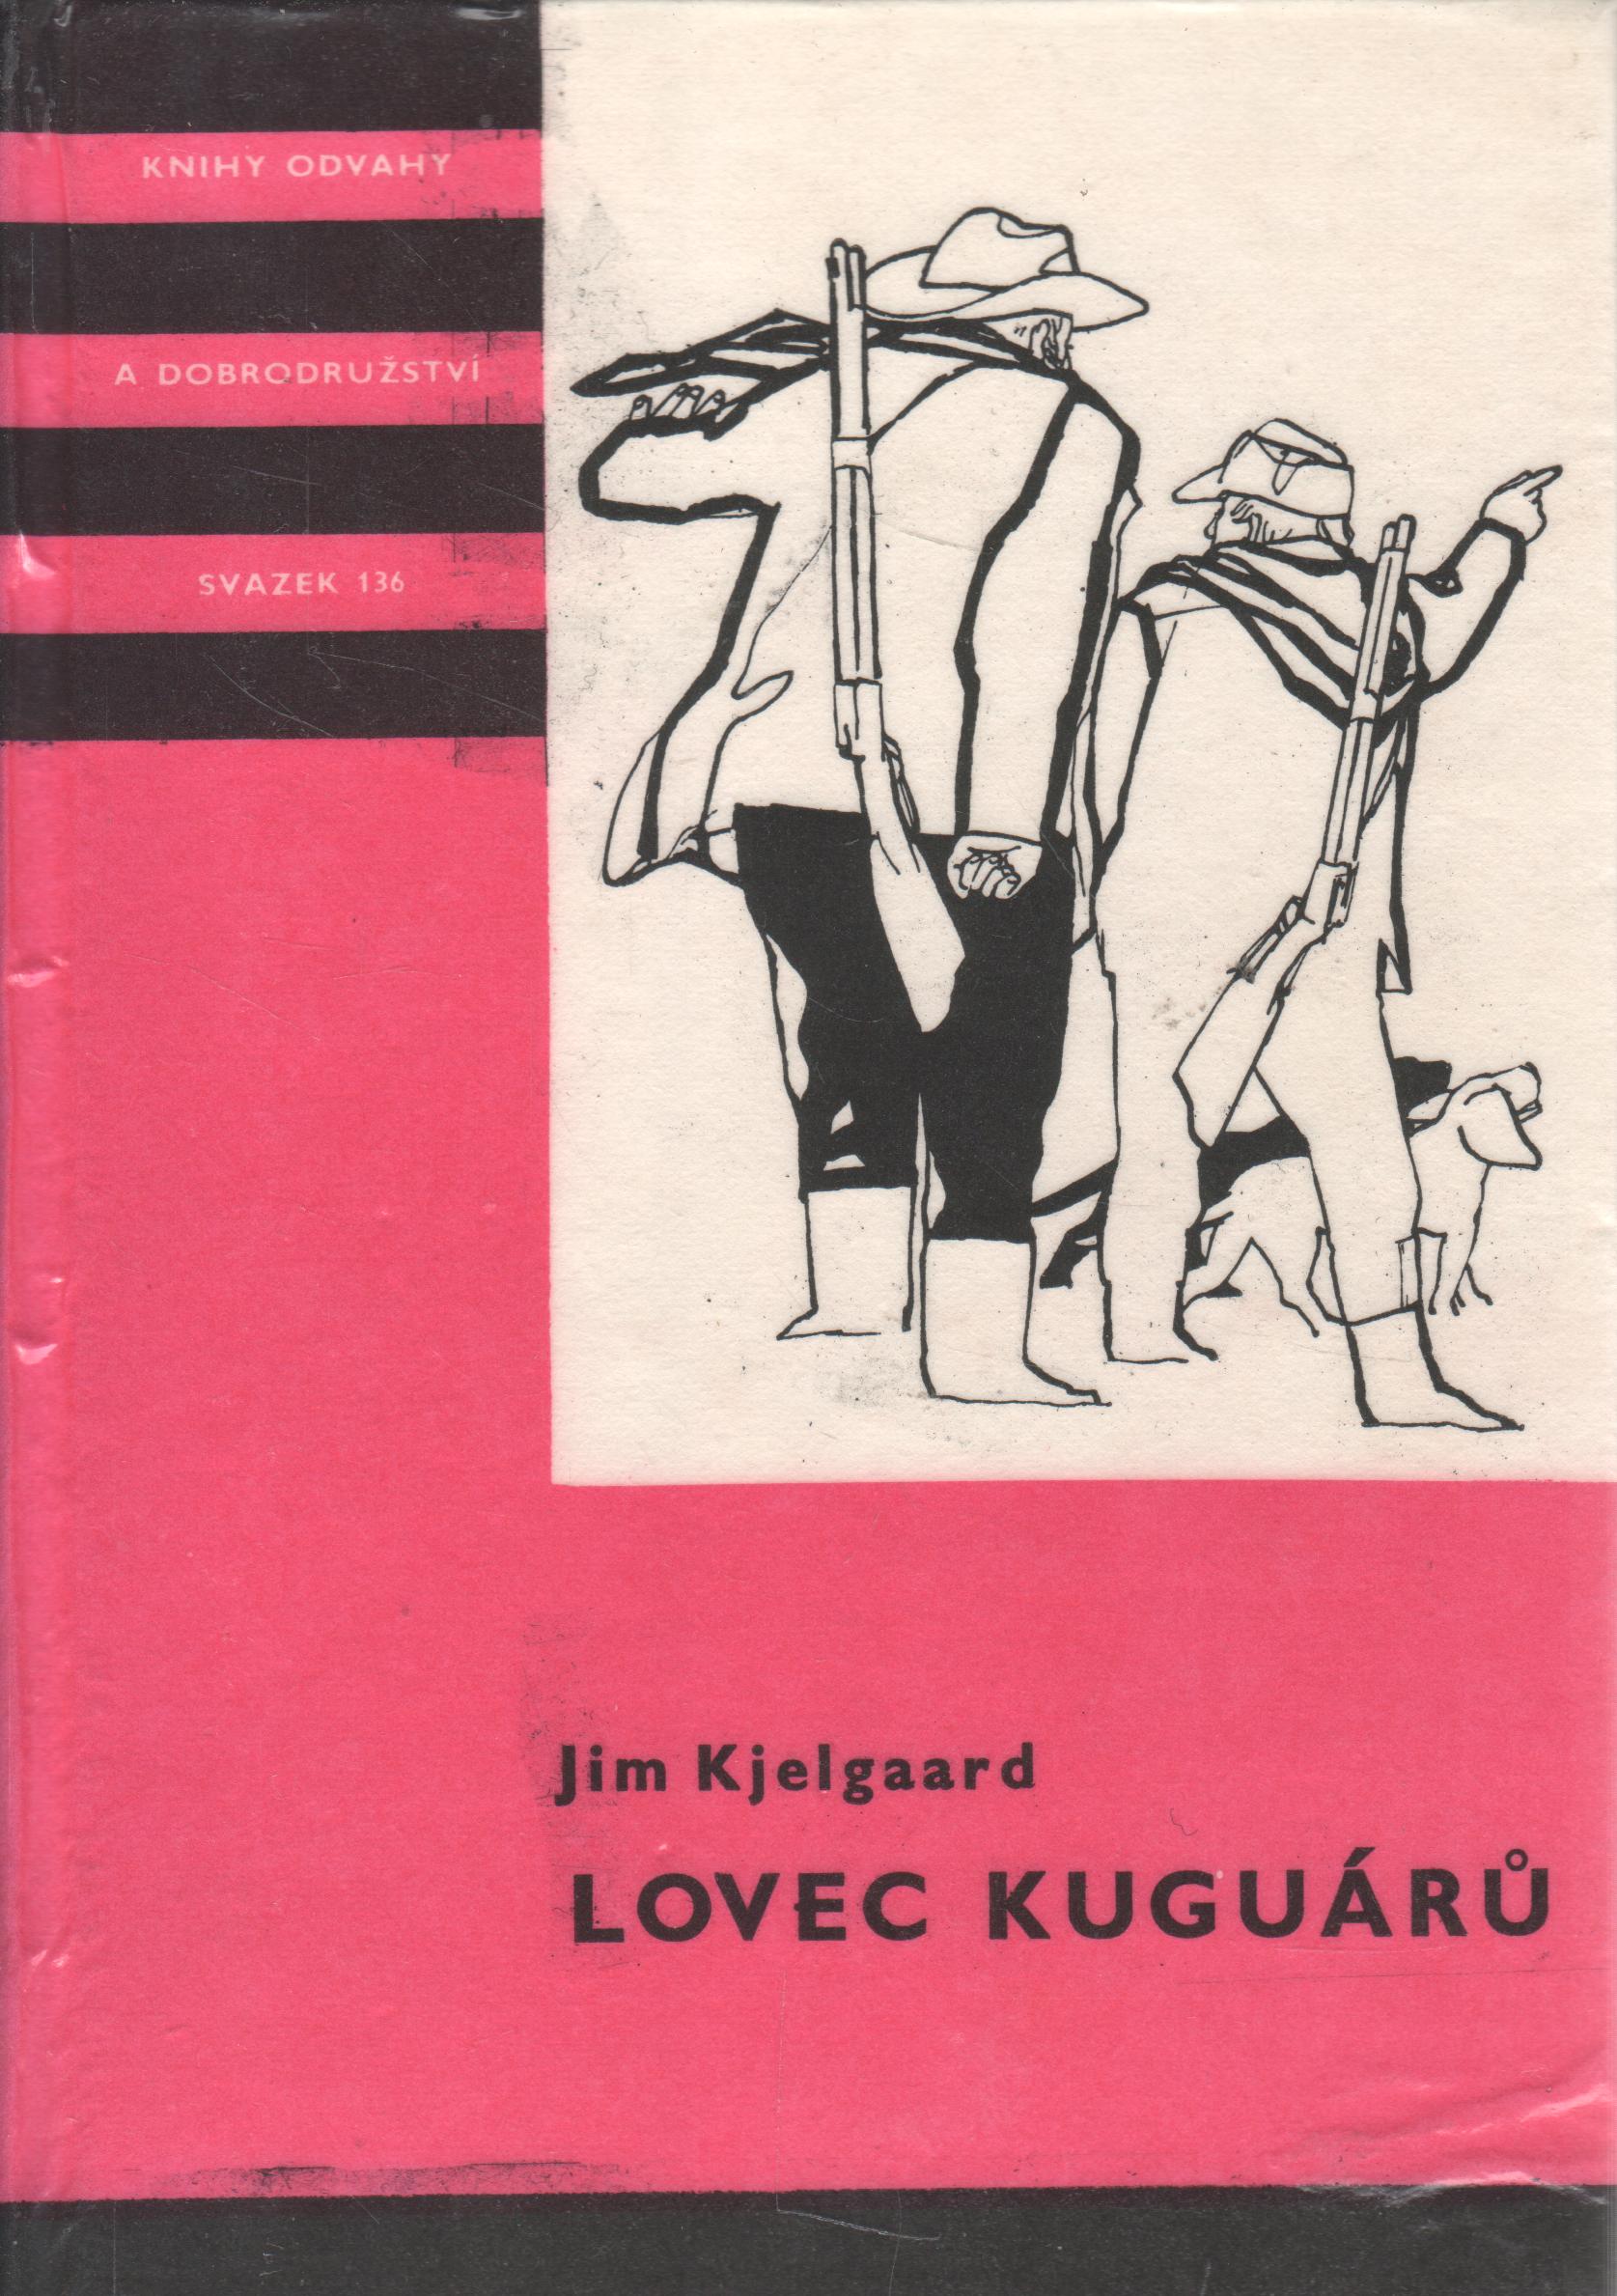 KOD sv. 136 Lovec Kaguárů / Jim Kjelgaard, 1975